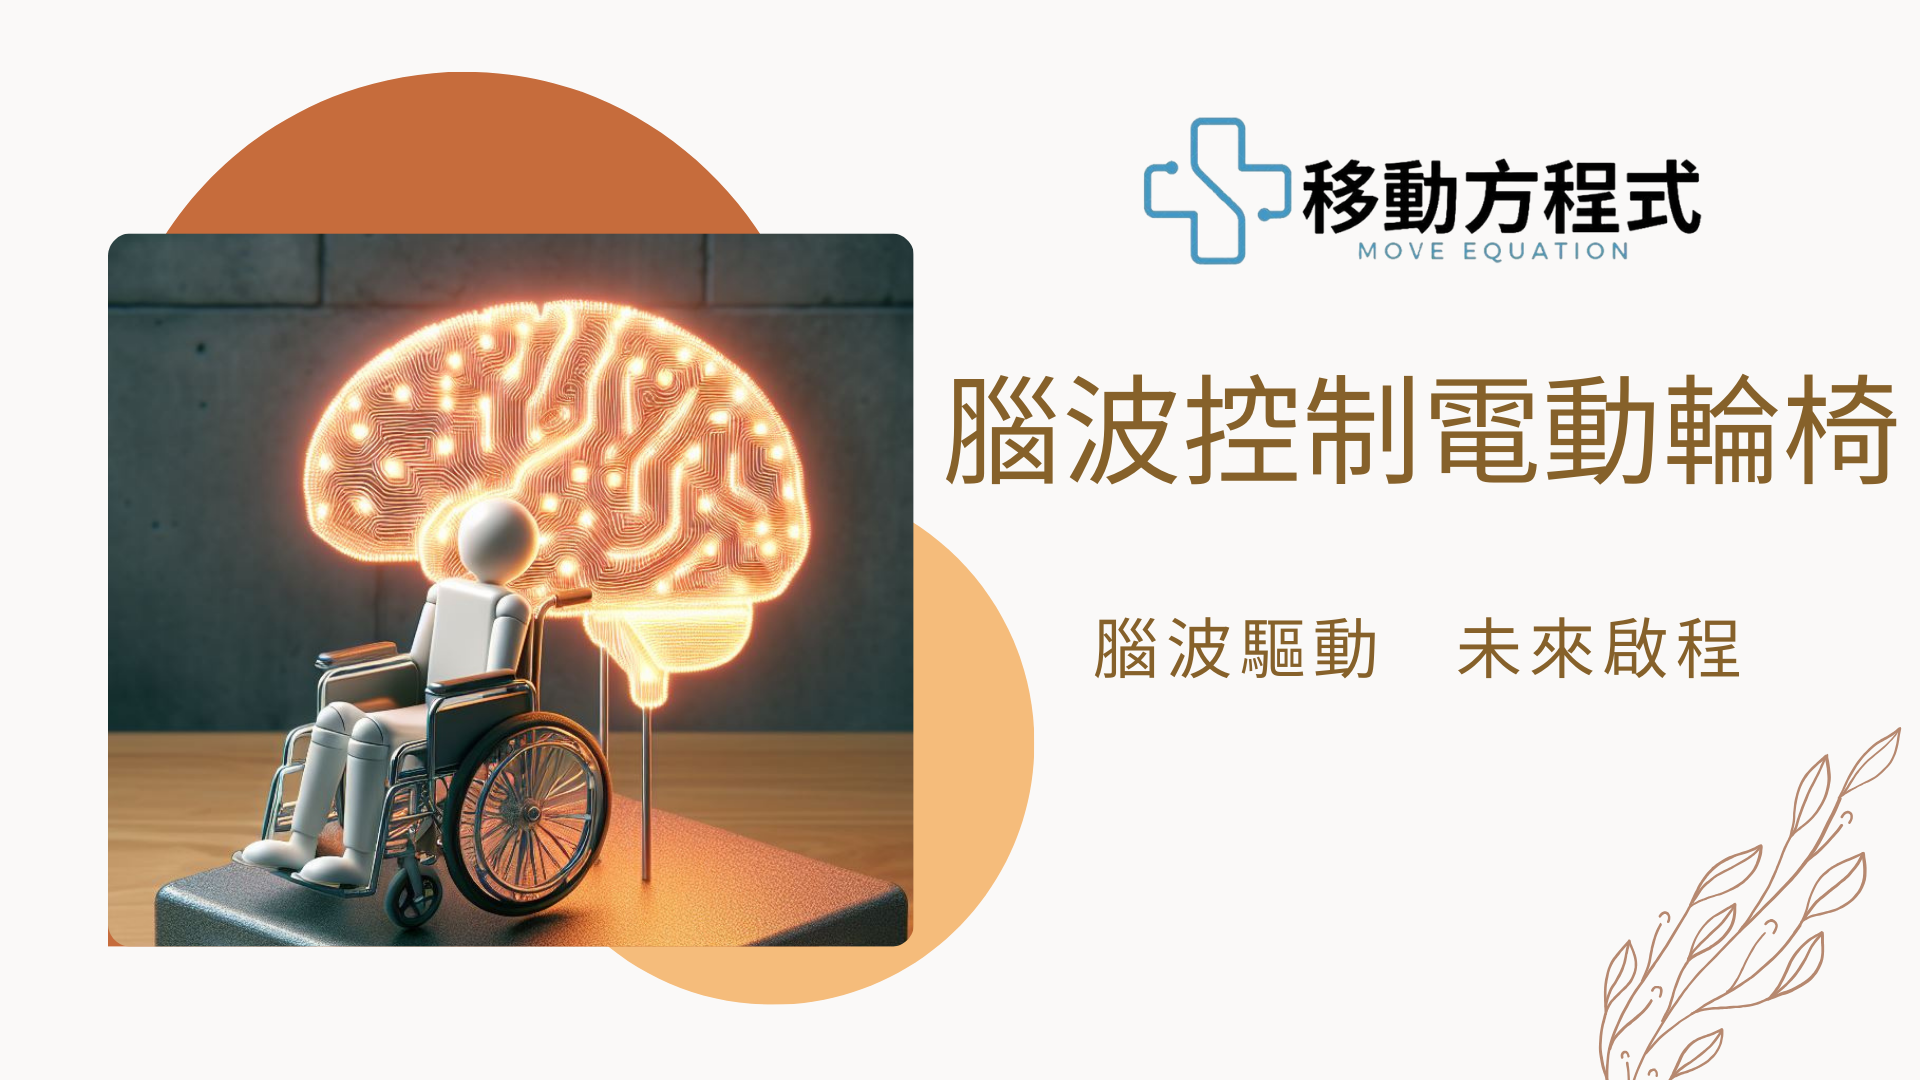 腦波控制電動輪椅